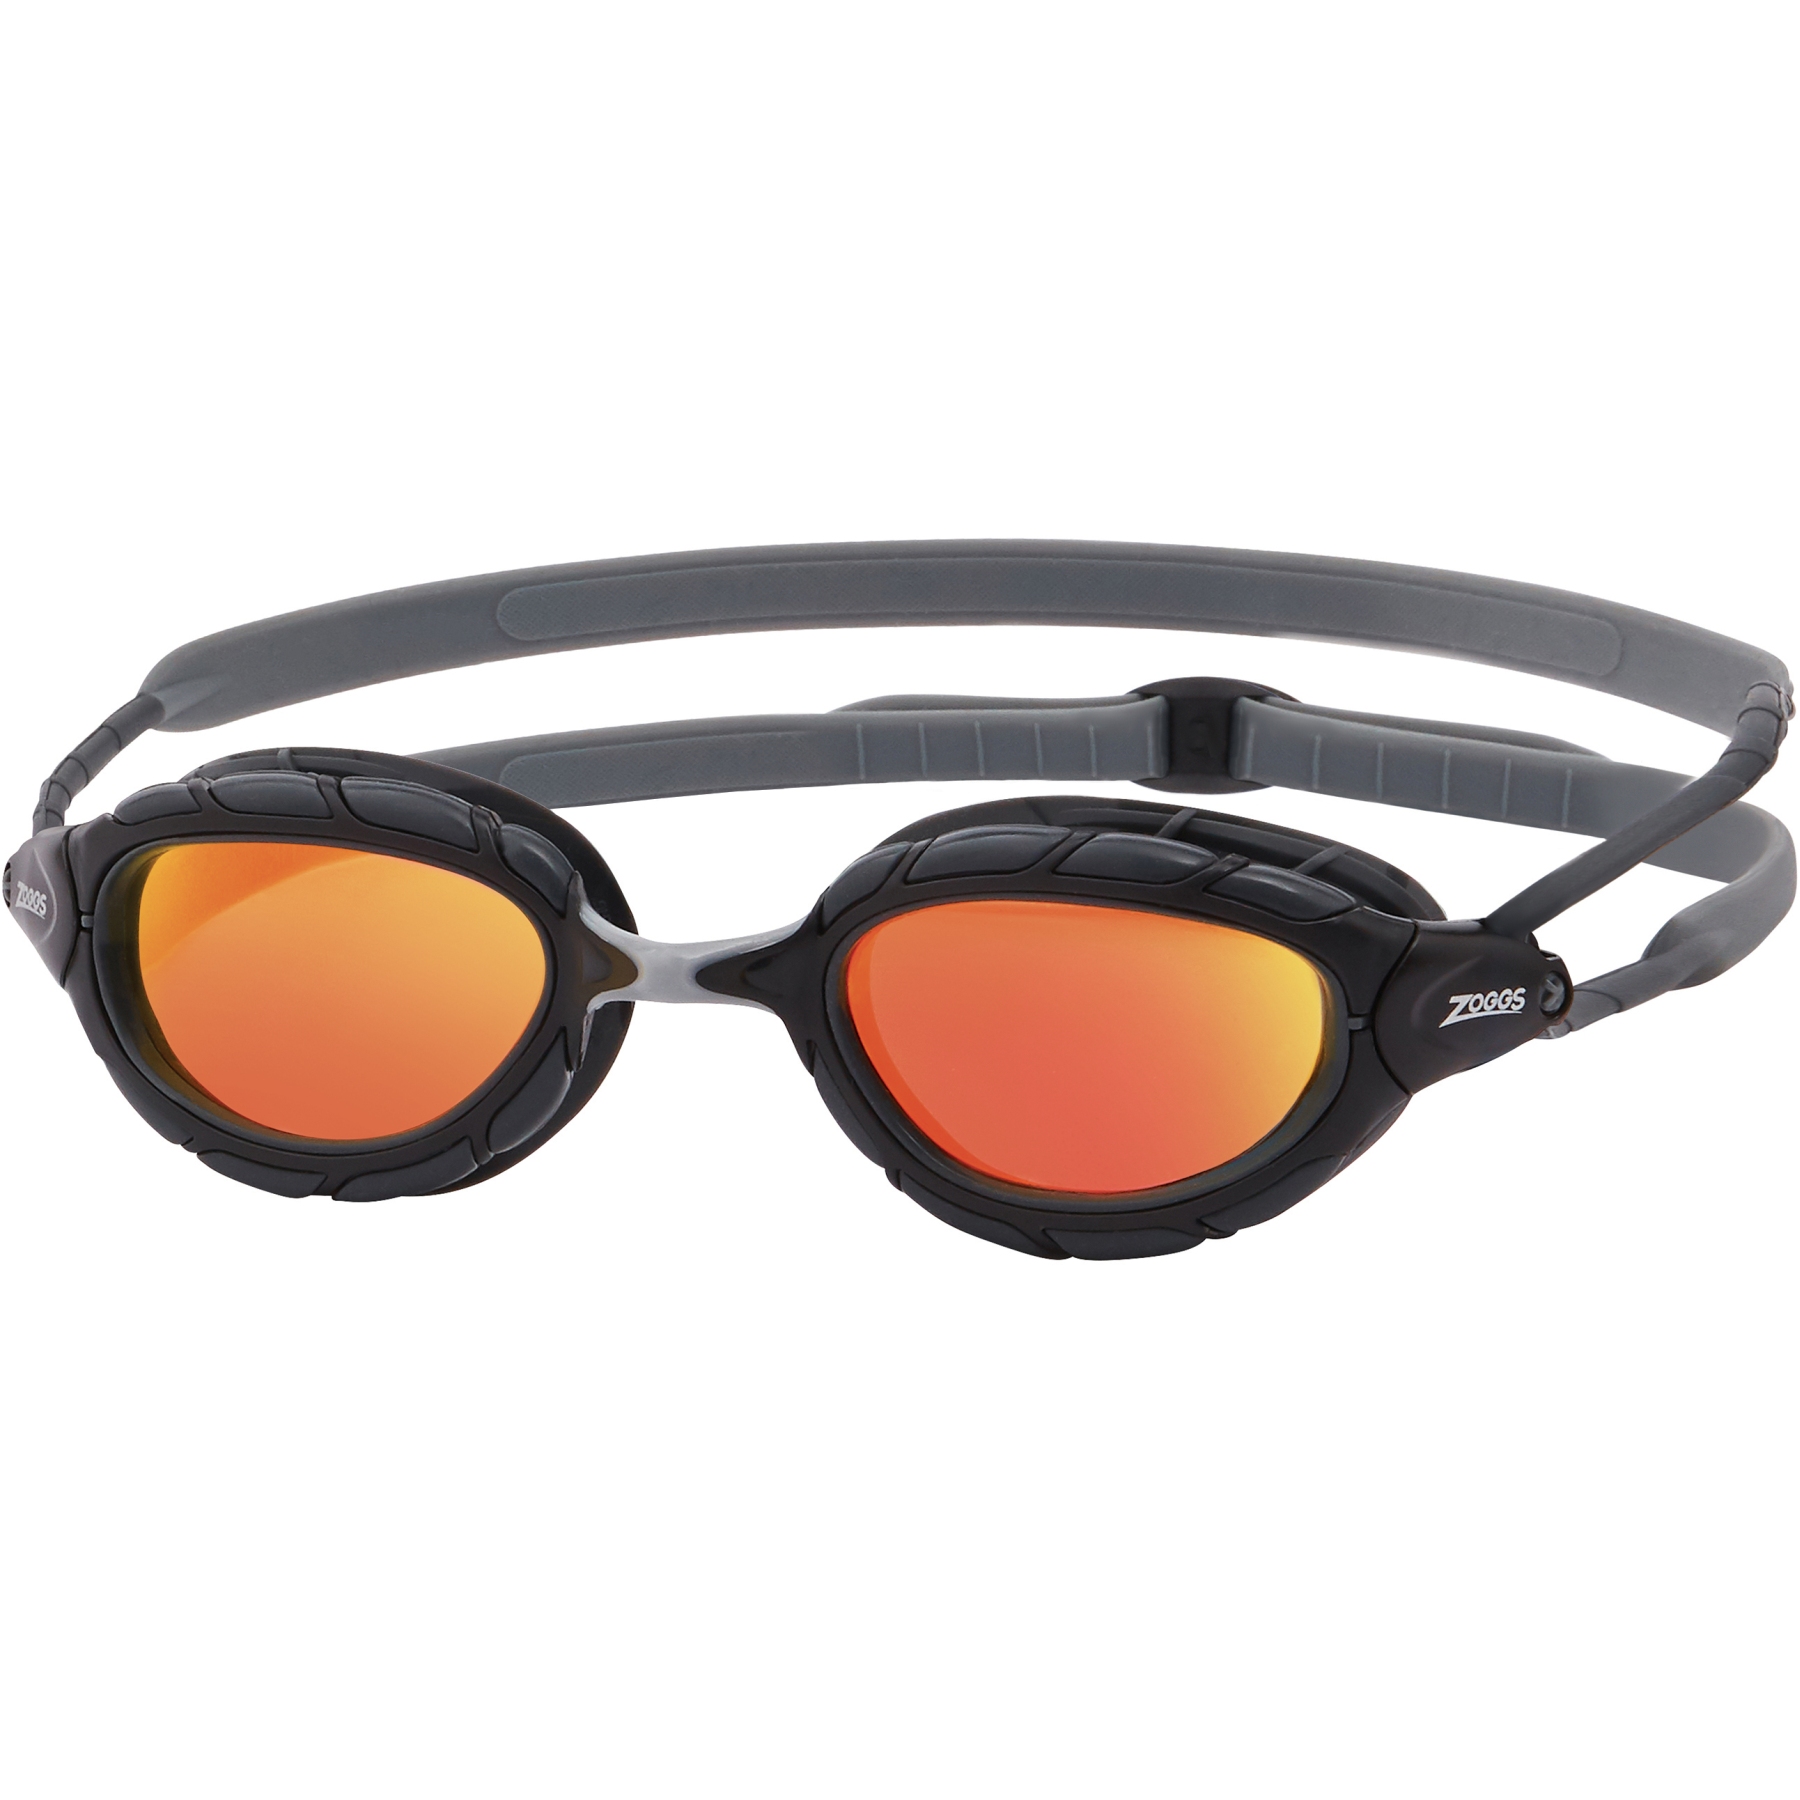 Produktbild von Zoggs Predator Titanium Schwimmbrille - Verspiegelte Gläser: Orange - Regular Fit - Grau/Schwarz